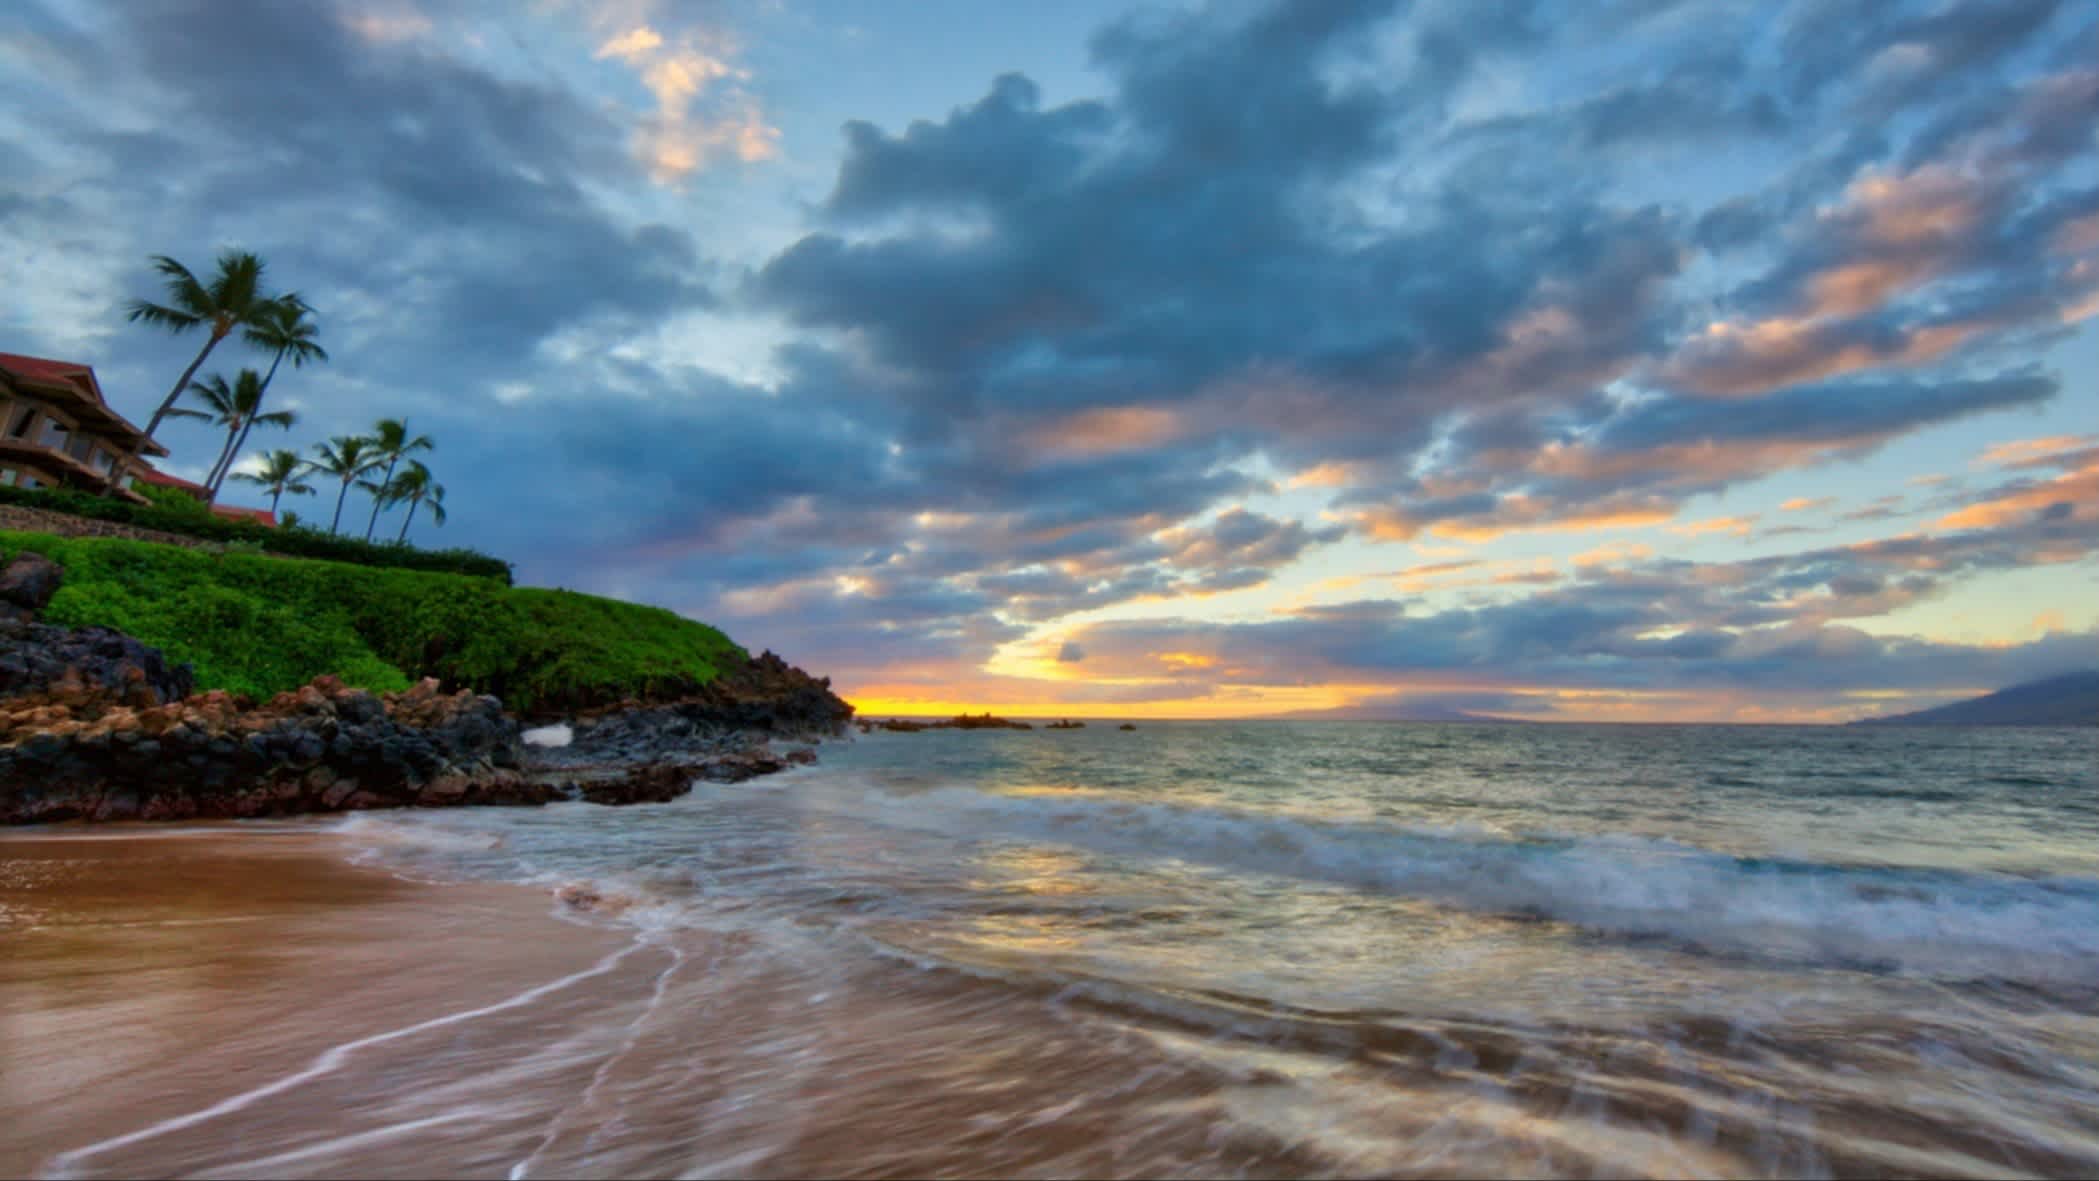 Der Wailea Beach, Maui, Hawaii, USA bei Sonnendämmerung und mit Blick auf das Meer und Palmen sowie einer Villa am Strand.